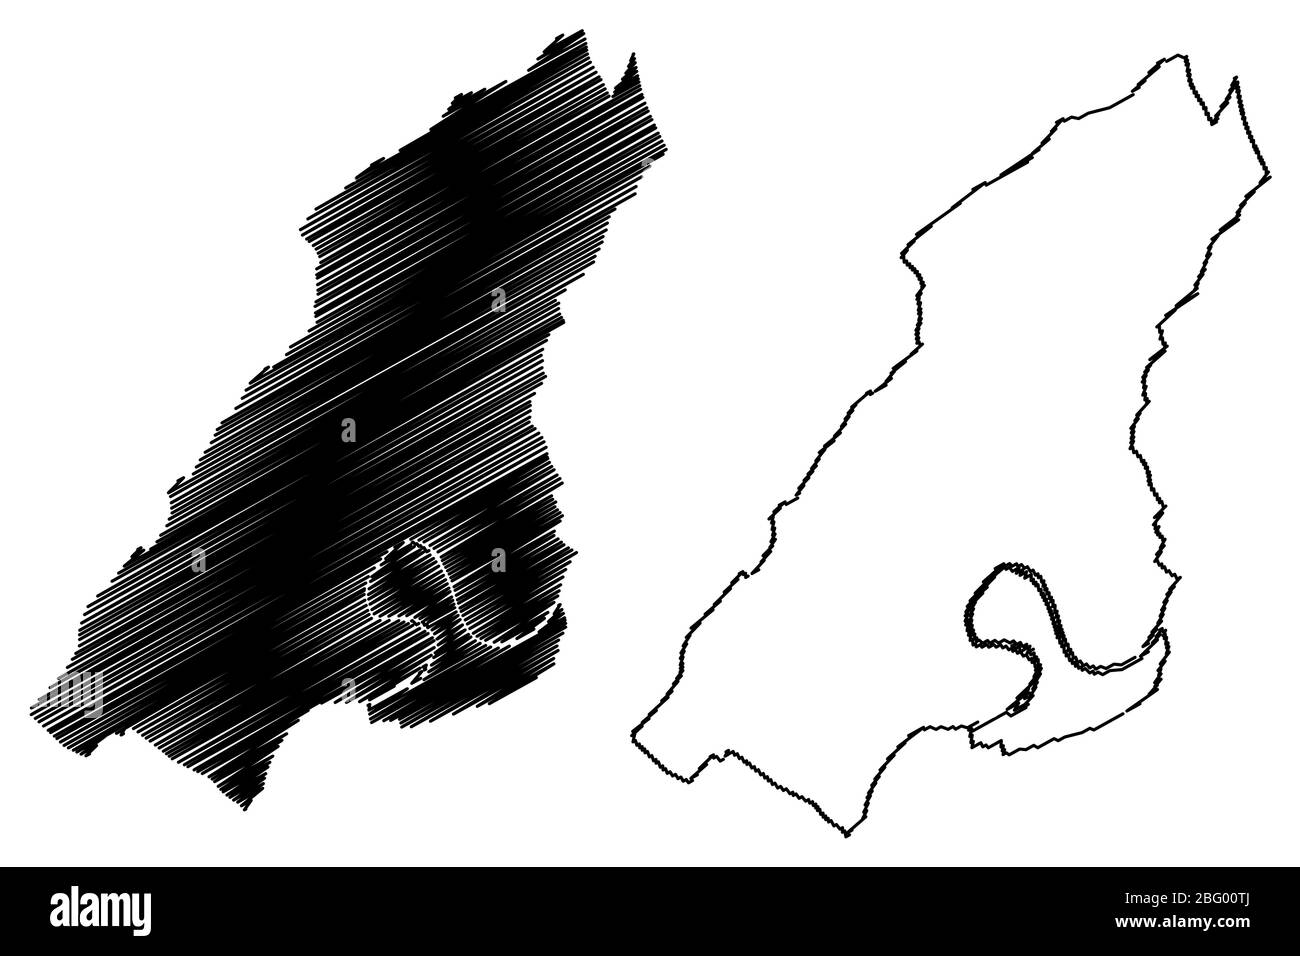 Besancon City (République française, France) illustration vectorielle cartographique, esquisse de griffonnage Ville de Besancon Illustration de Vecteur